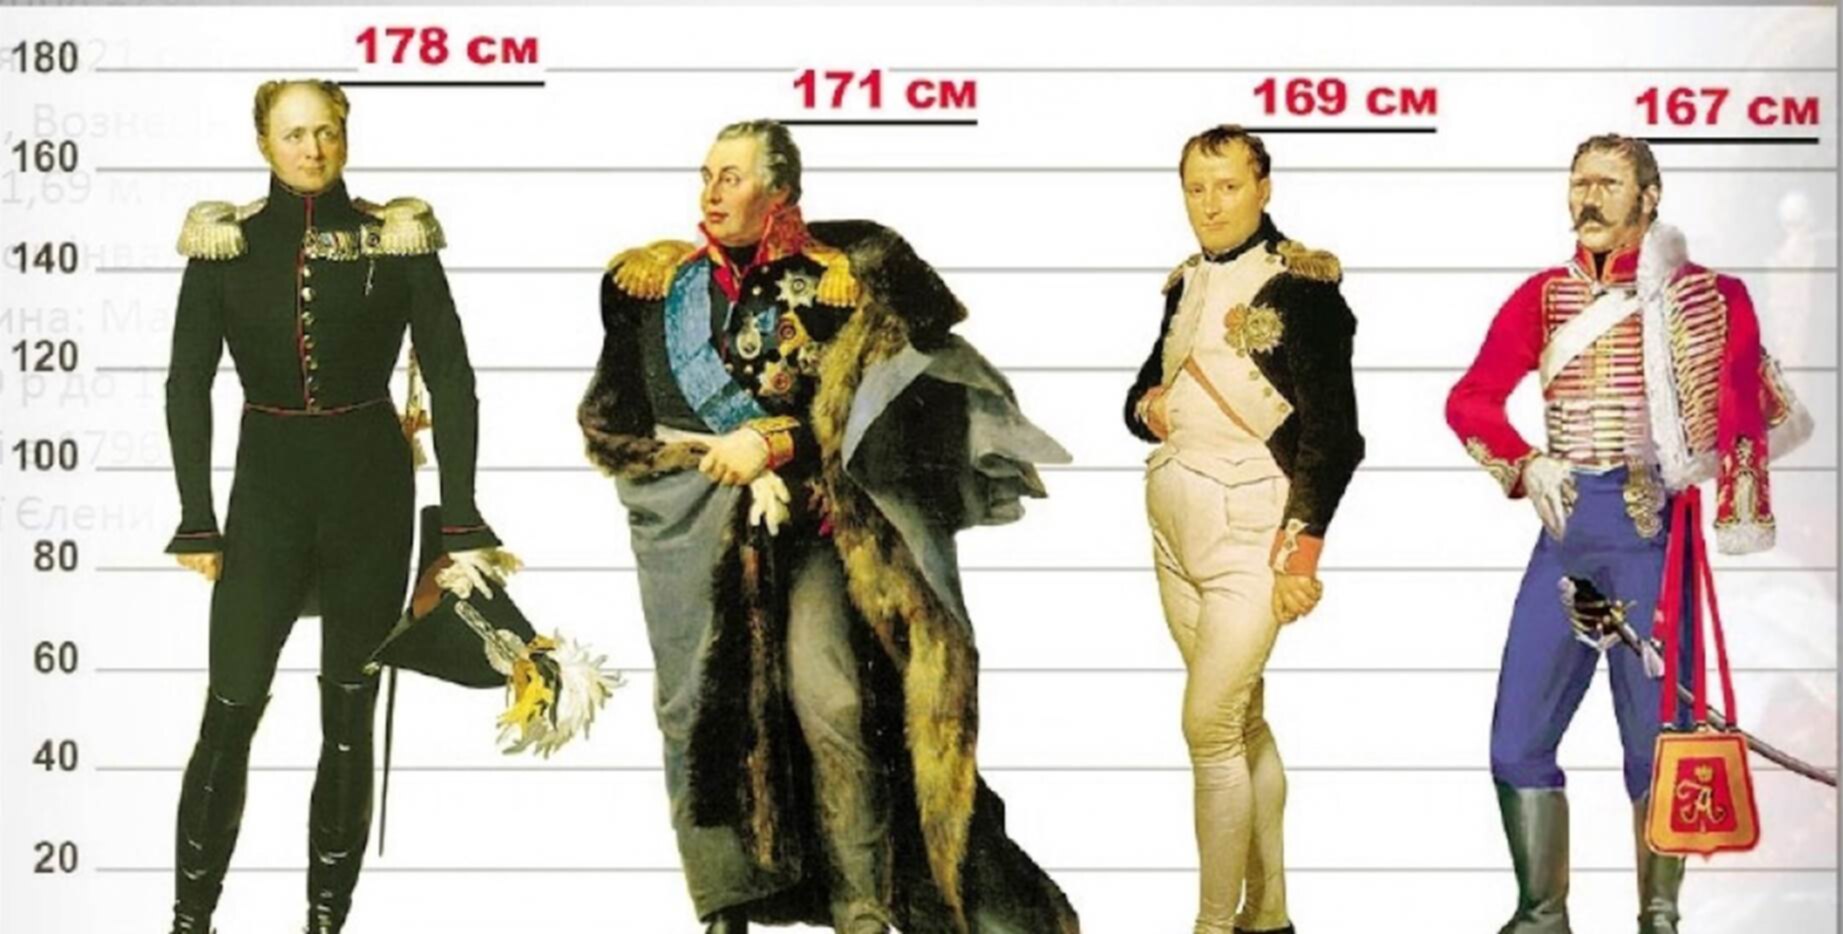 Среднестатистический размер мужчины в россии. Рост Наполеона Бонапарта в см. Какого роста был Наполеон Бонапарт. Наполеон Бонапарт рост. Рост Наполеона 1 Бонапарта.